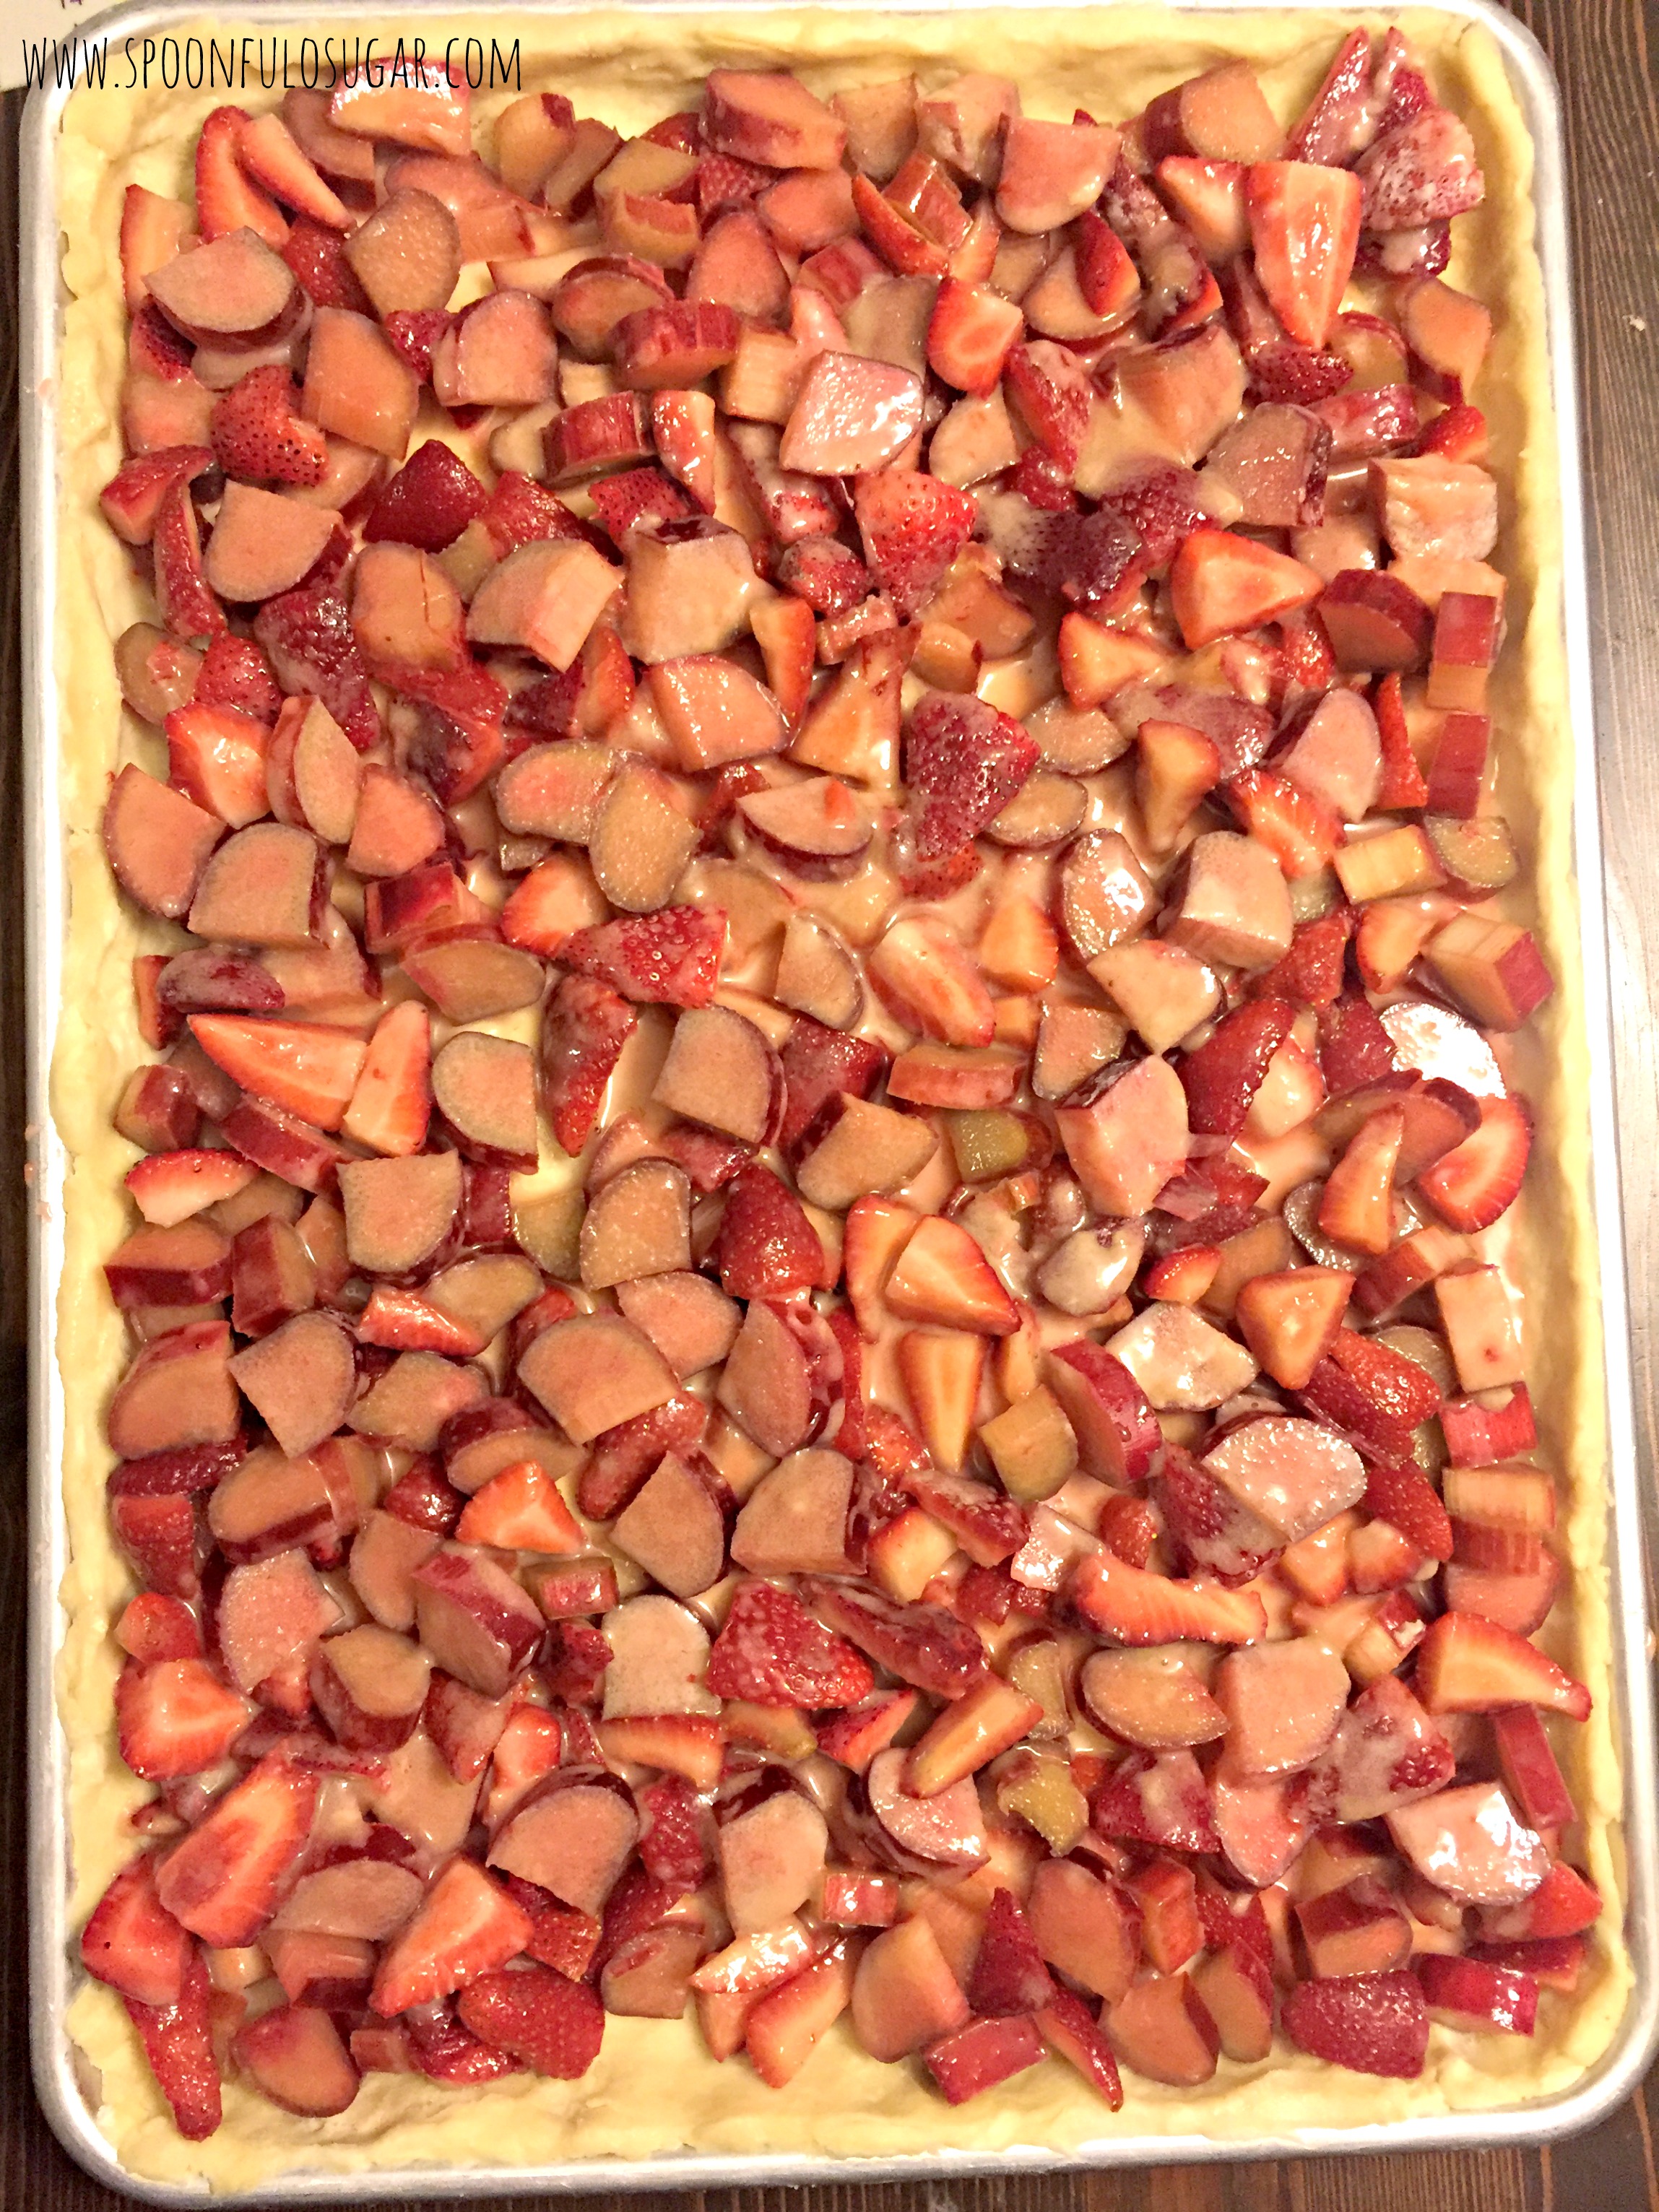 Strawberry Rhubarb Slab Pie | Spoonful of Sugar